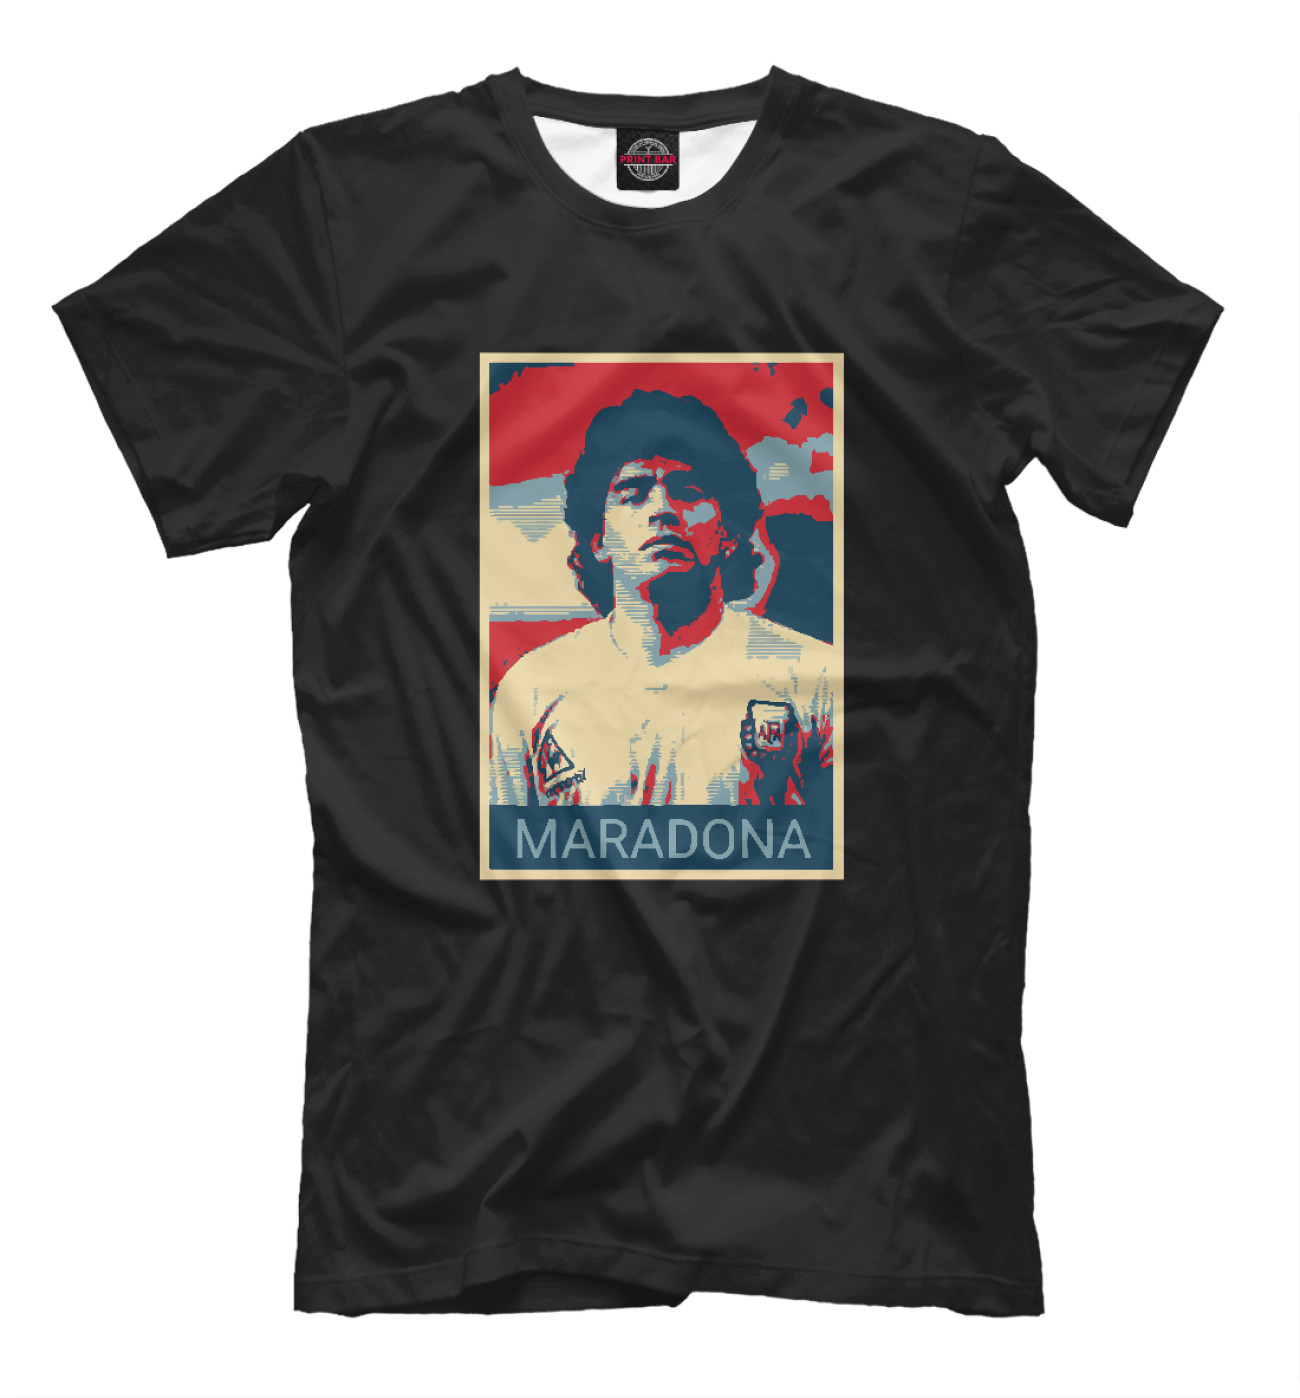 Мужская Футболка Maradona, артикул: FLT-836145-fut-2